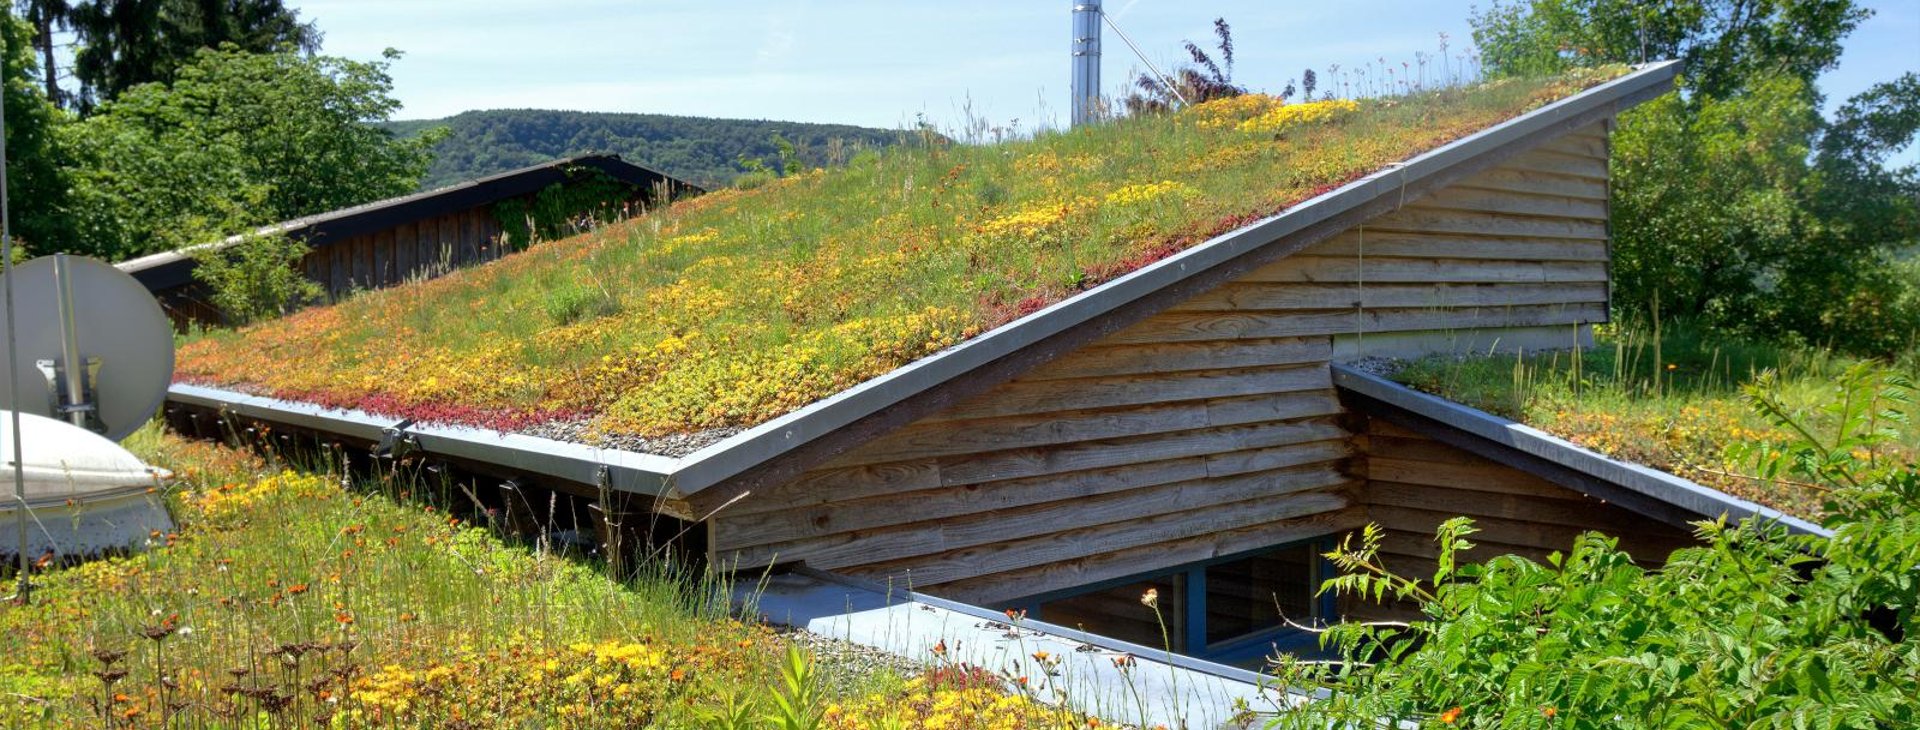 Zinco Green Roof. Экстенсивная зеленая кровля. Крыша из травы. Наклонная зеленая кровля.